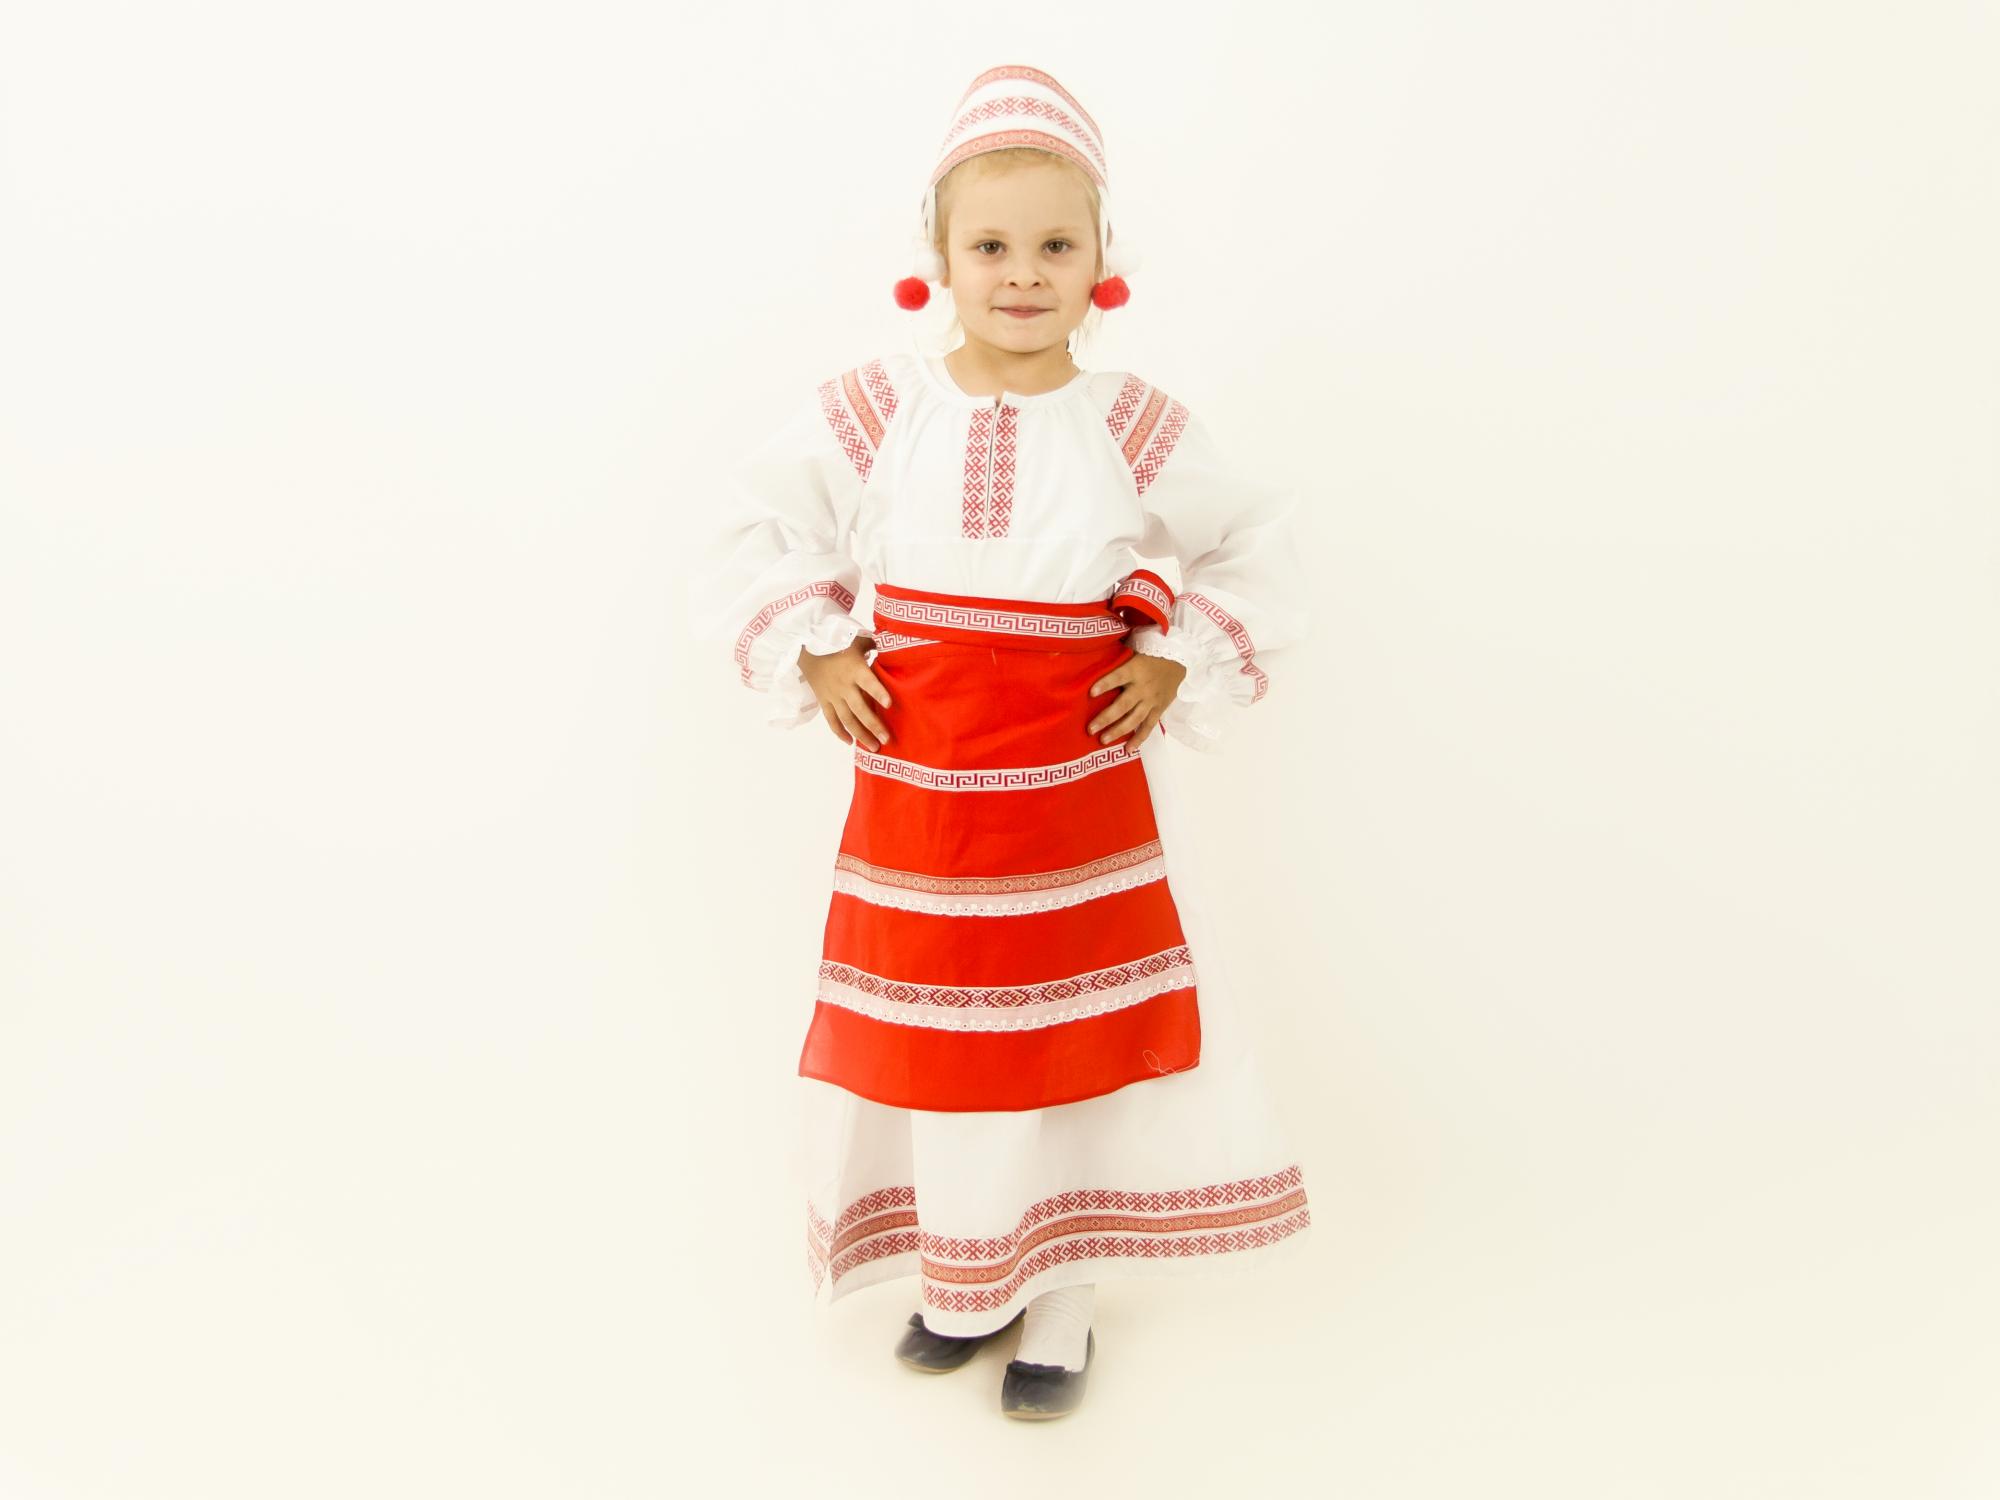 1 национальный белорусский. Белорусский народный костюм (девочка) (платье + фартук + головной убор). Брагинский Строй белорусский народный костюм. Белорусский народный костюм для девочки. Белорусский костюм для девочки.